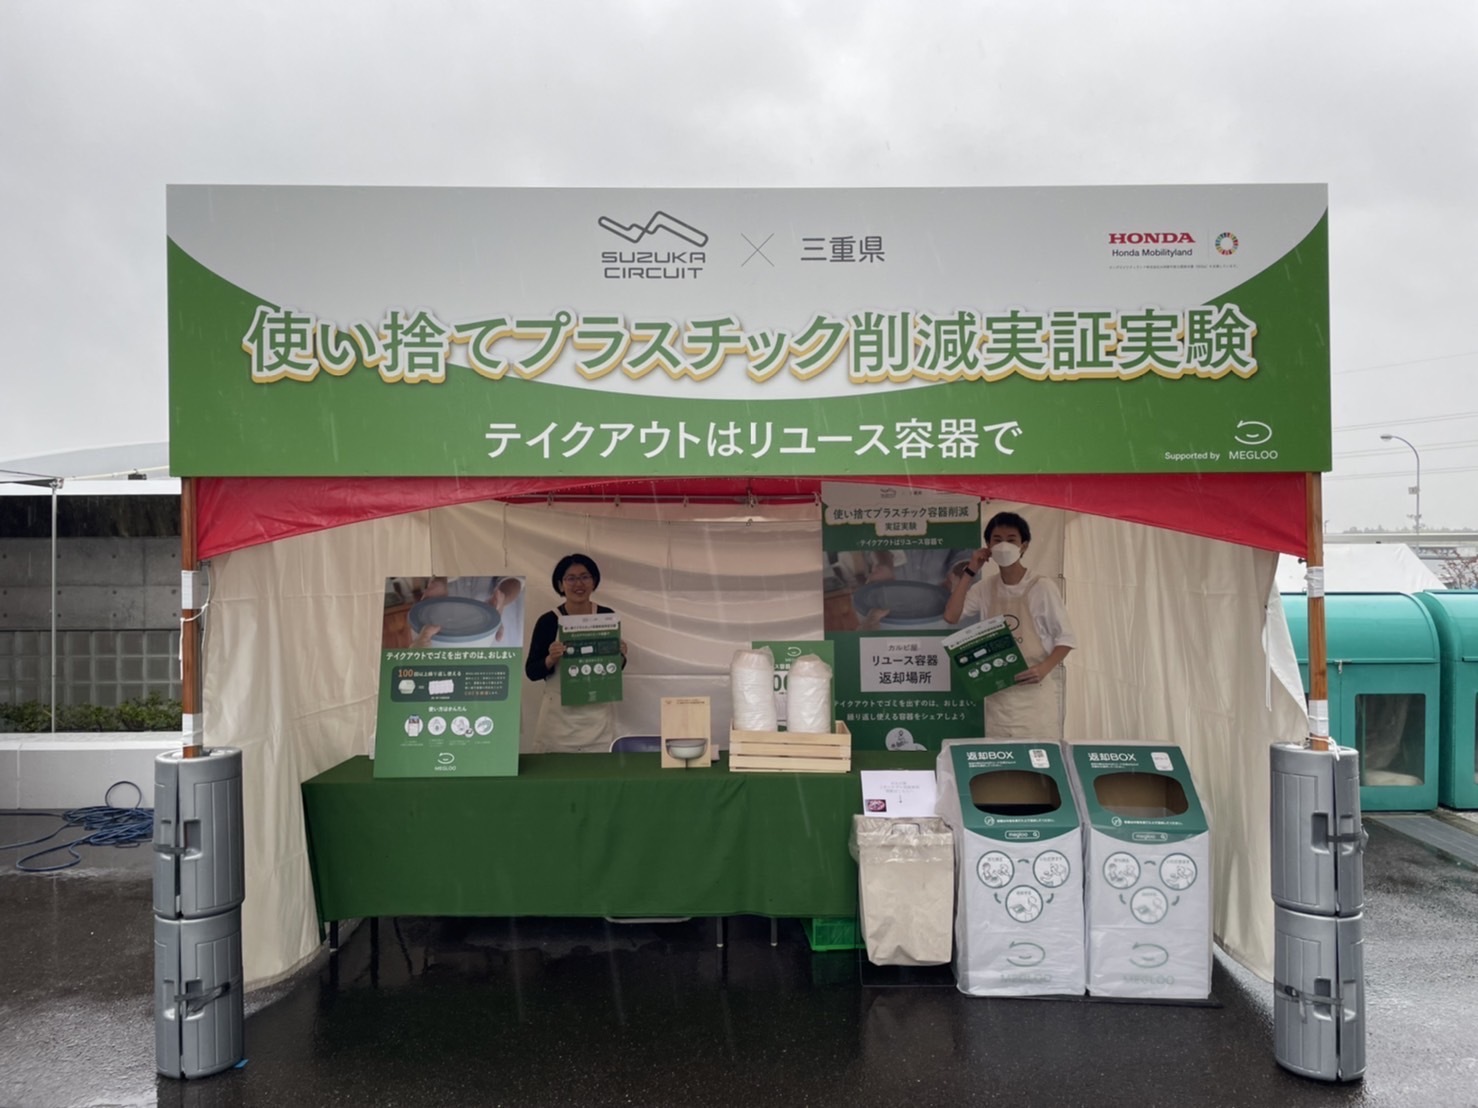 鈴鹿サーキット×三重県で「リターナブル容器による使い捨てプラスチック削減実証実験」を実施